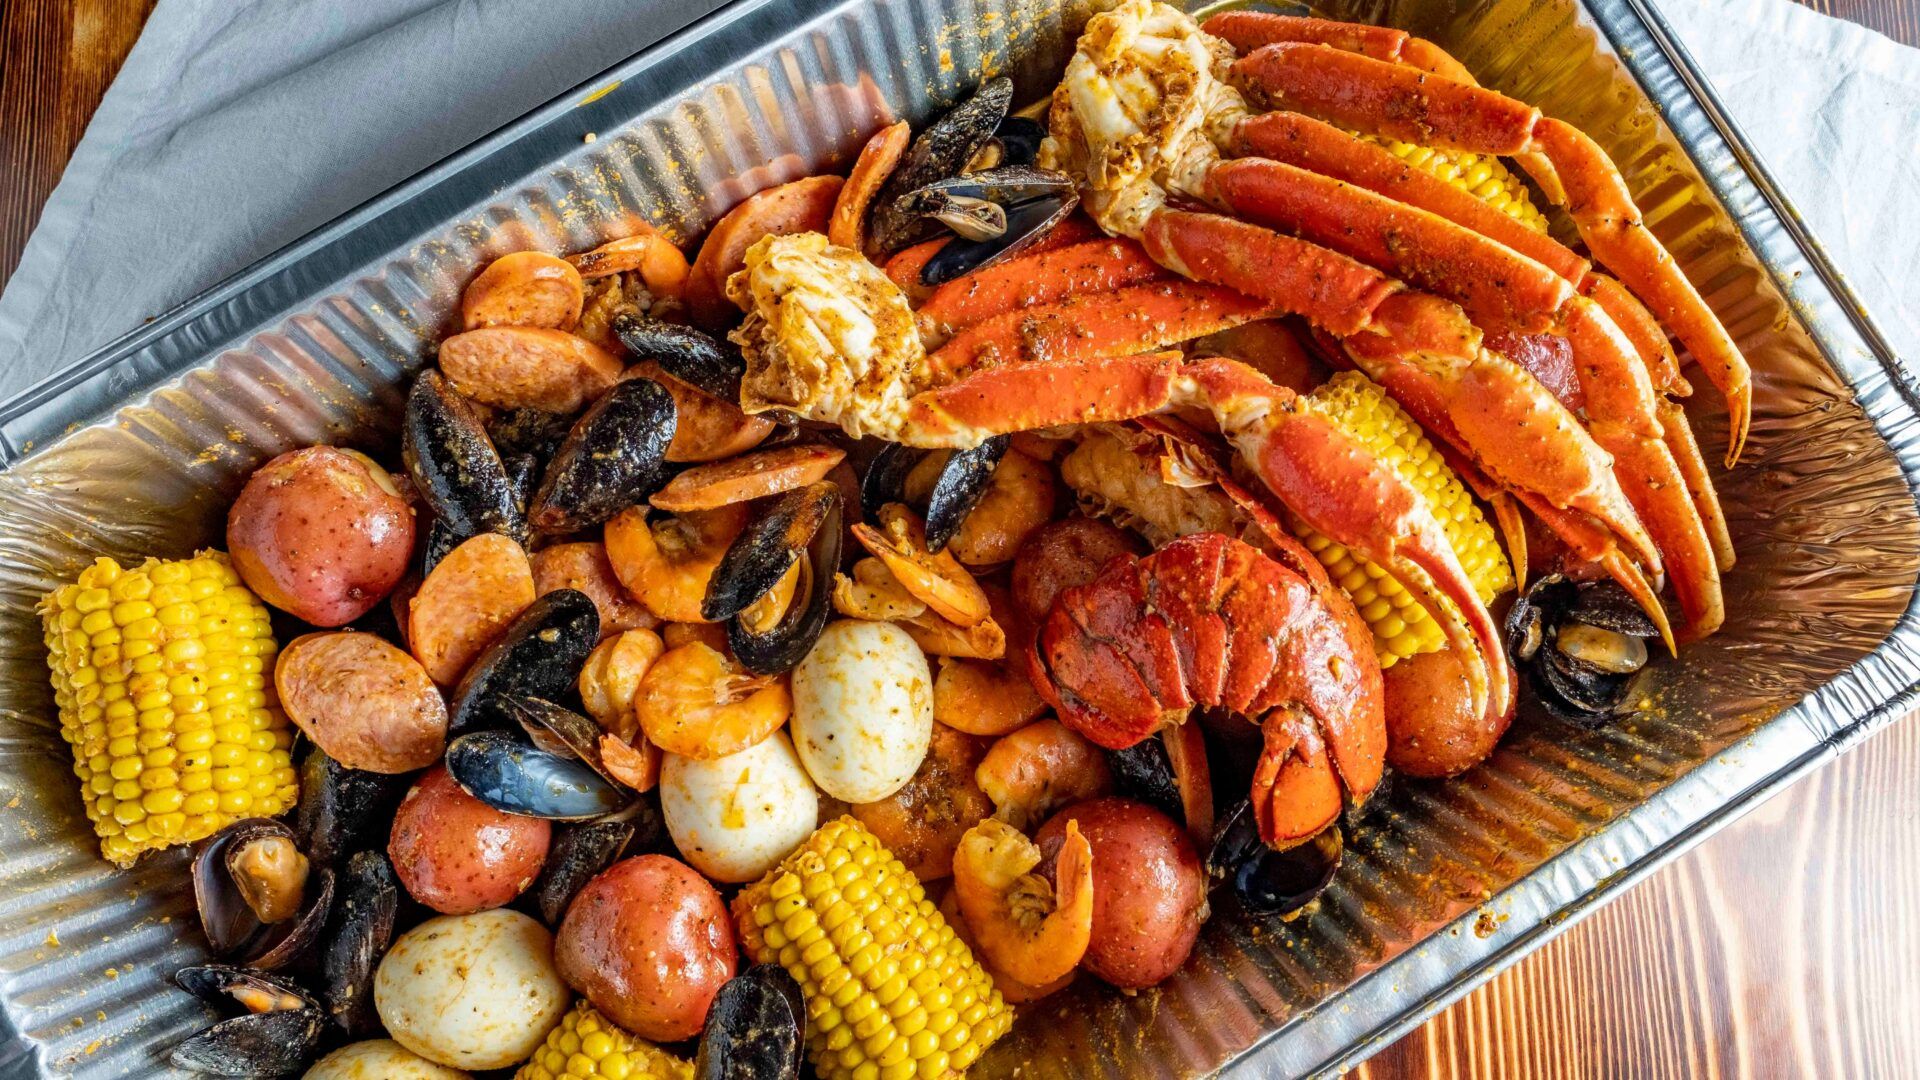 20 Best Seafood Restaurants In Schenectady New York 